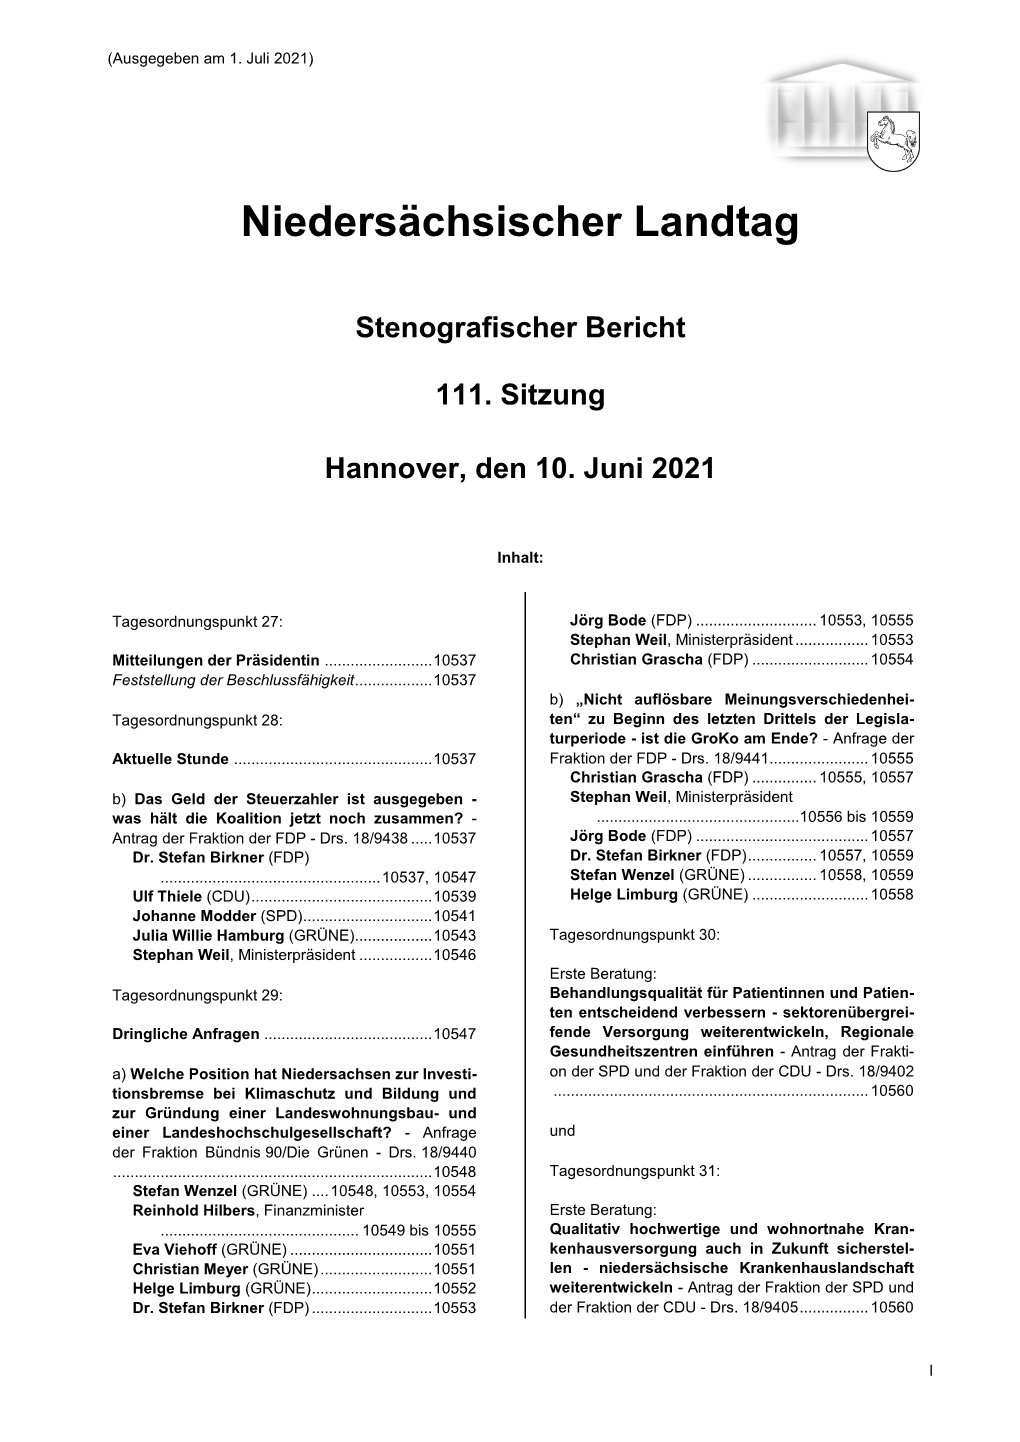 Stenografischer Bericht 111. Sitzung Hannover, Den 10. Juni 2021